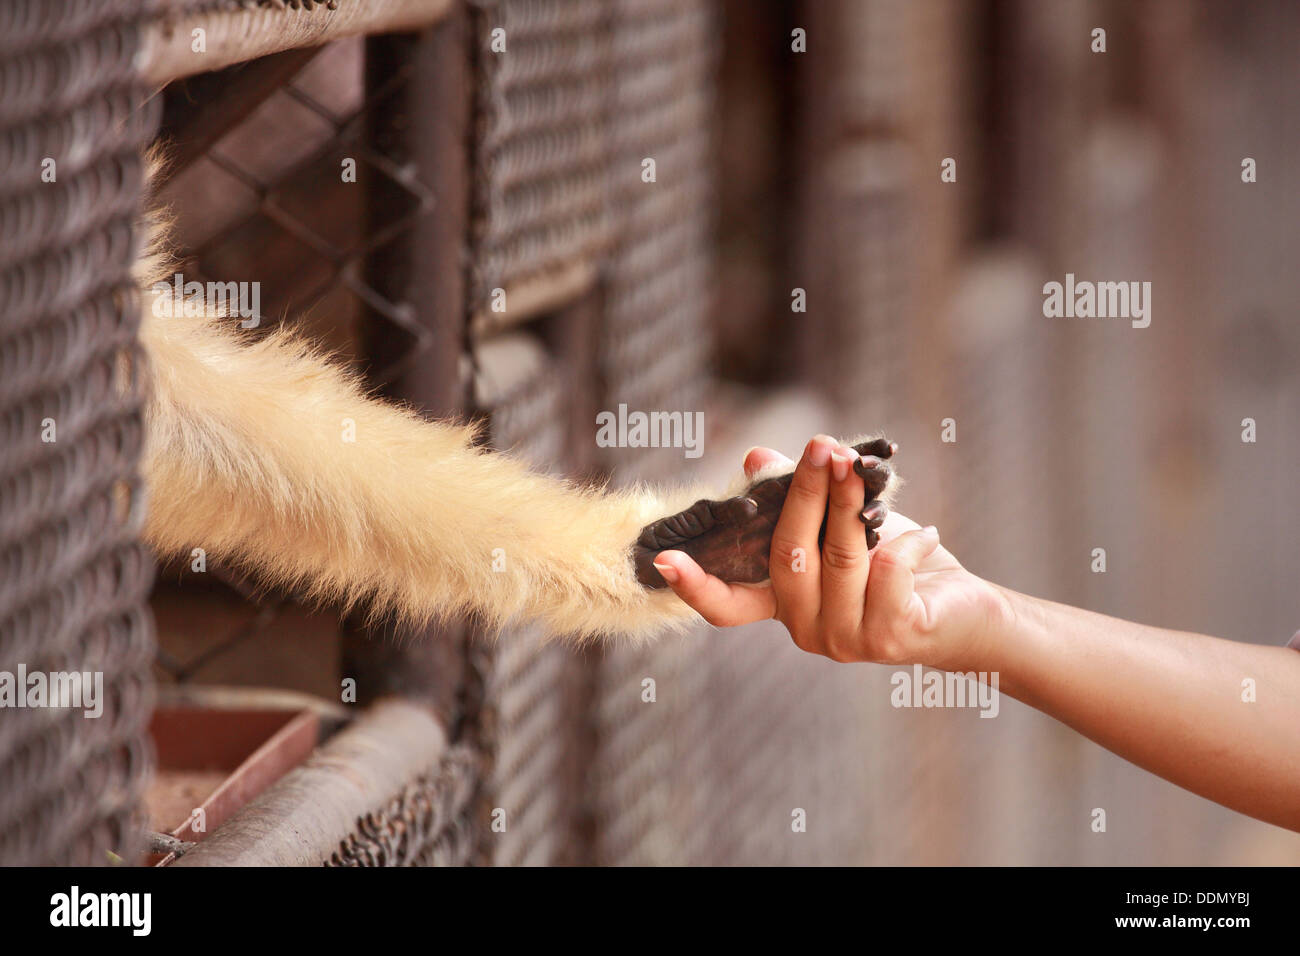 Eine Person Touch Hand zusammen mit einem Affen im Käfig Stockfoto